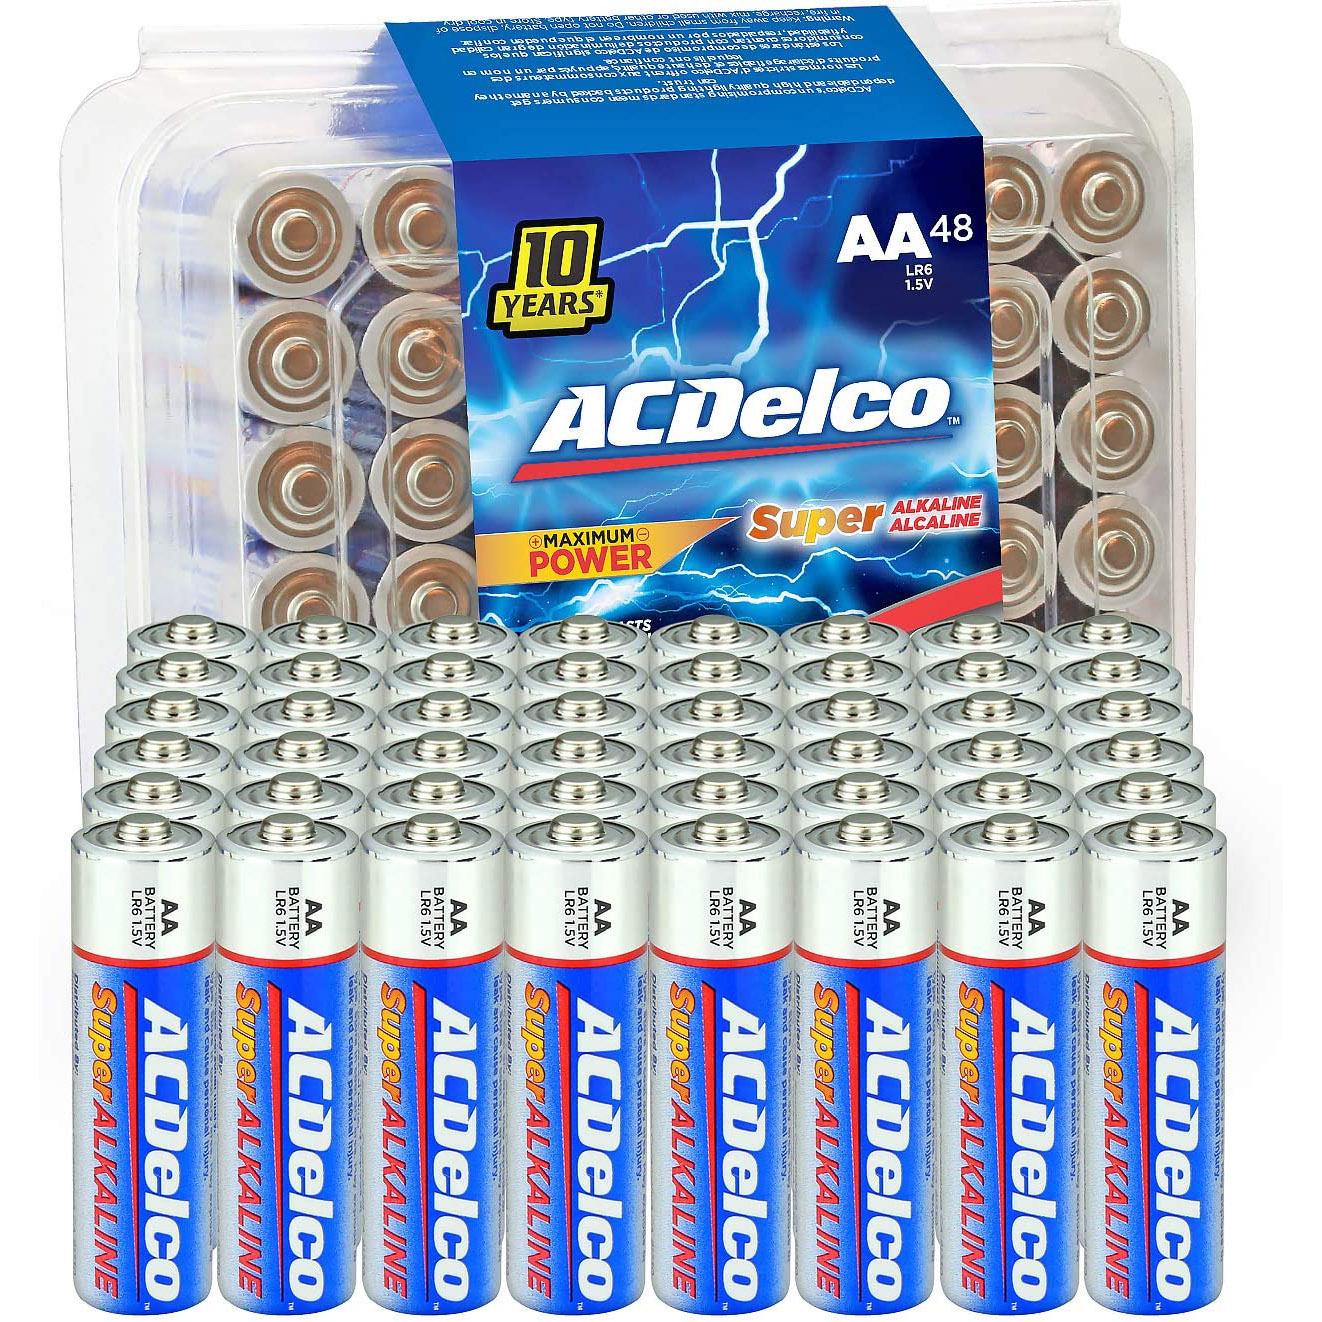 48 ACDelco AA Super Alkaline Batteries for $10.99